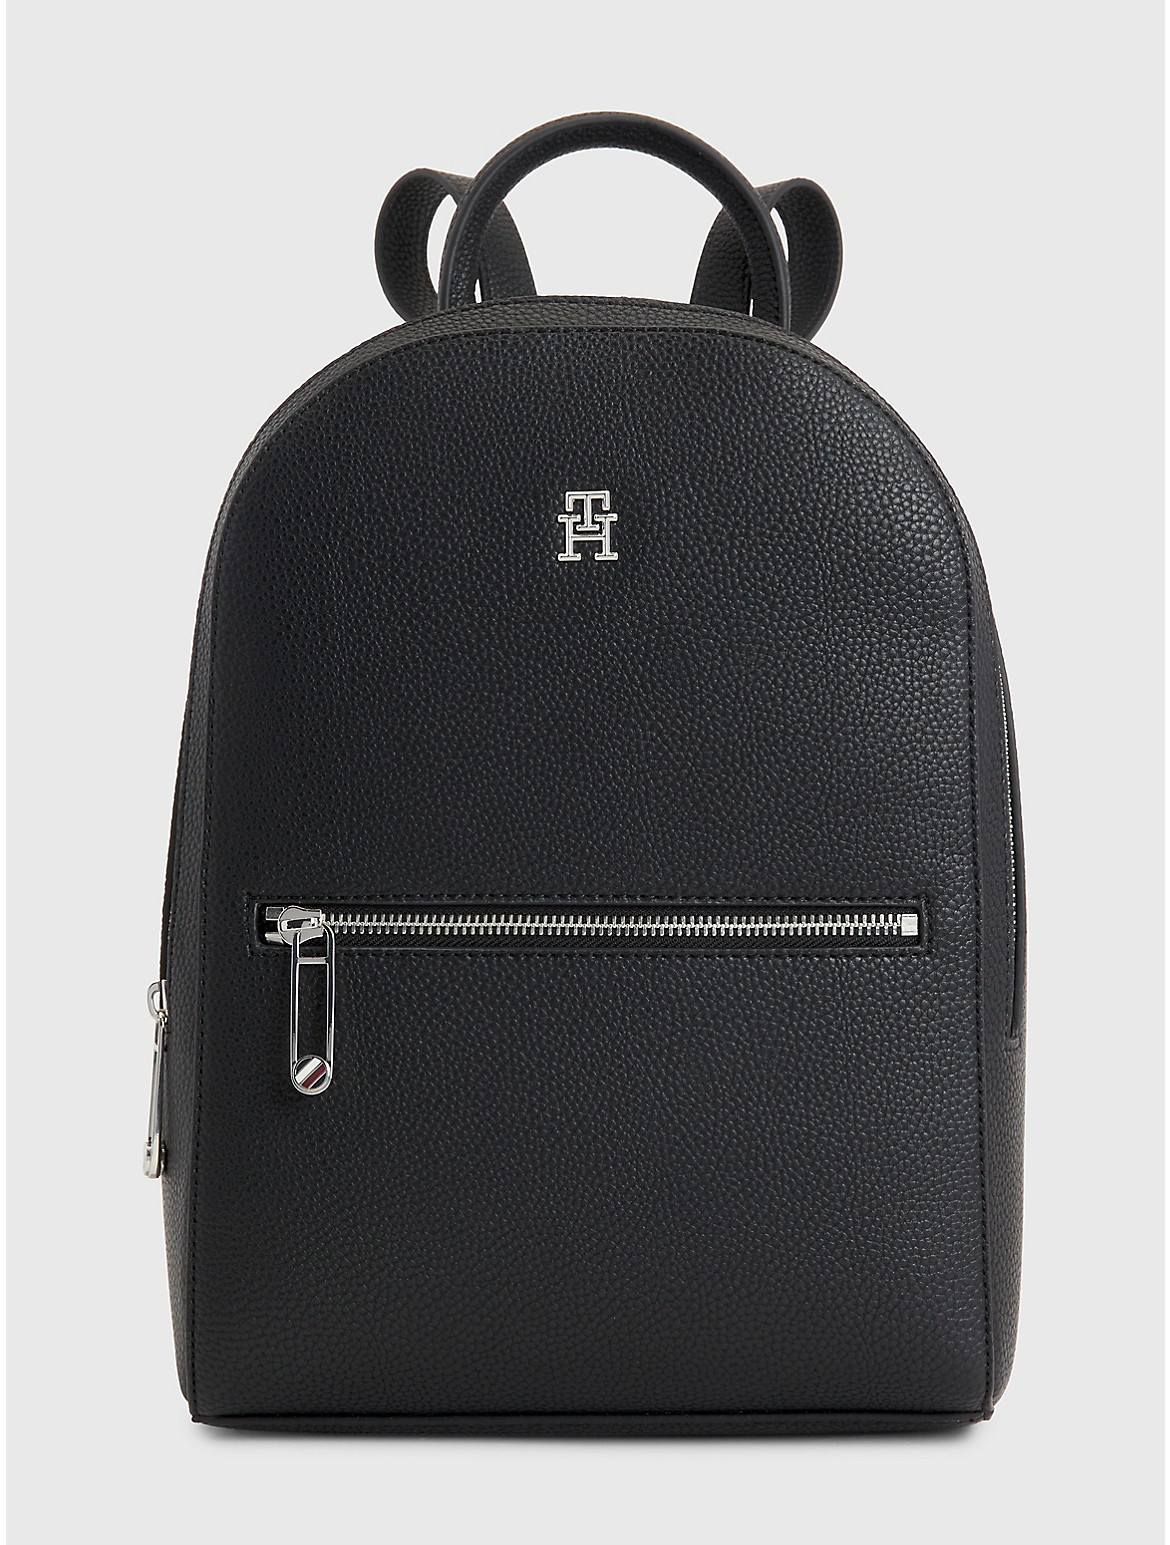 Tommy Hilfiger Women's TH Logo Backpack - Black